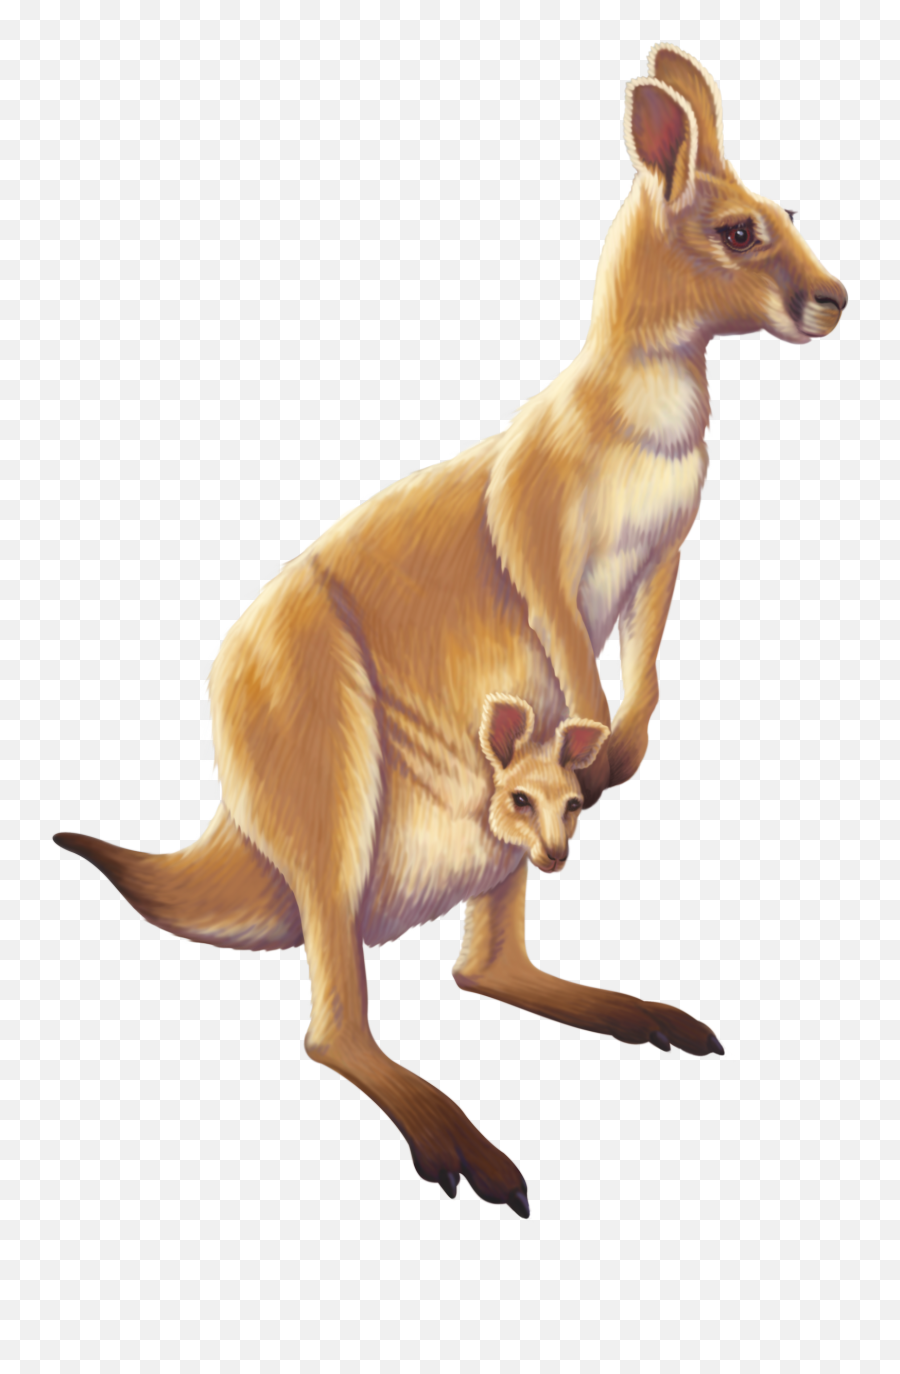 Download Kangaroo Australia Animal Free Transparent Image Hd Png Animals